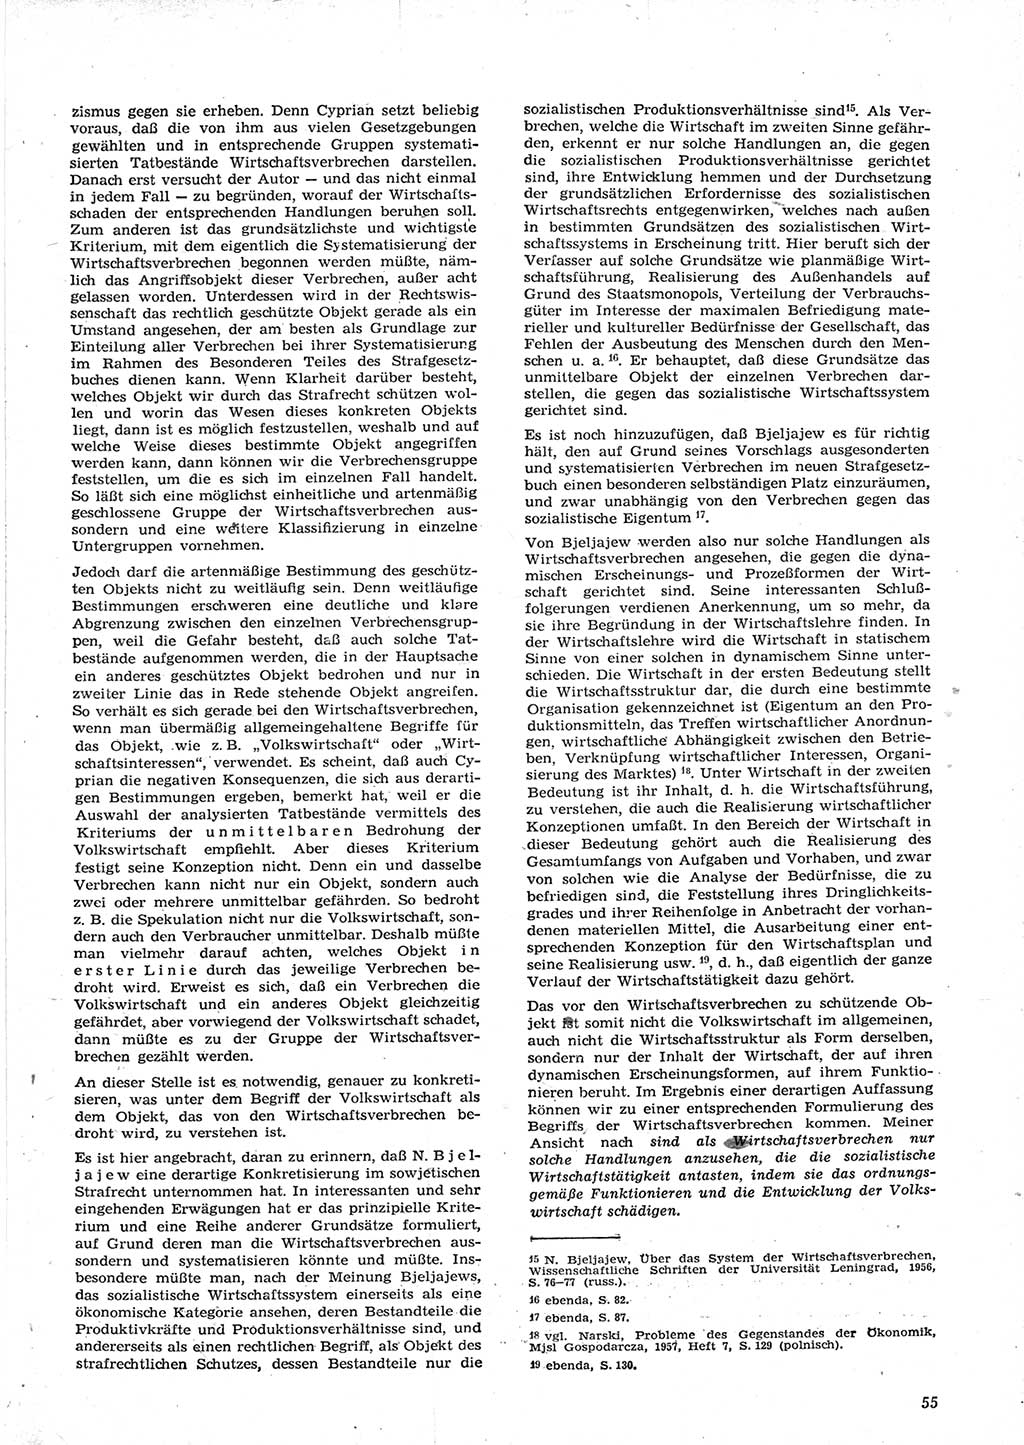 Neue Justiz (NJ), Zeitschrift für Recht und Rechtswissenschaft [Deutsche Demokratische Republik (DDR)], 15. Jahrgang 1961, Seite 55 (NJ DDR 1961, S. 55)